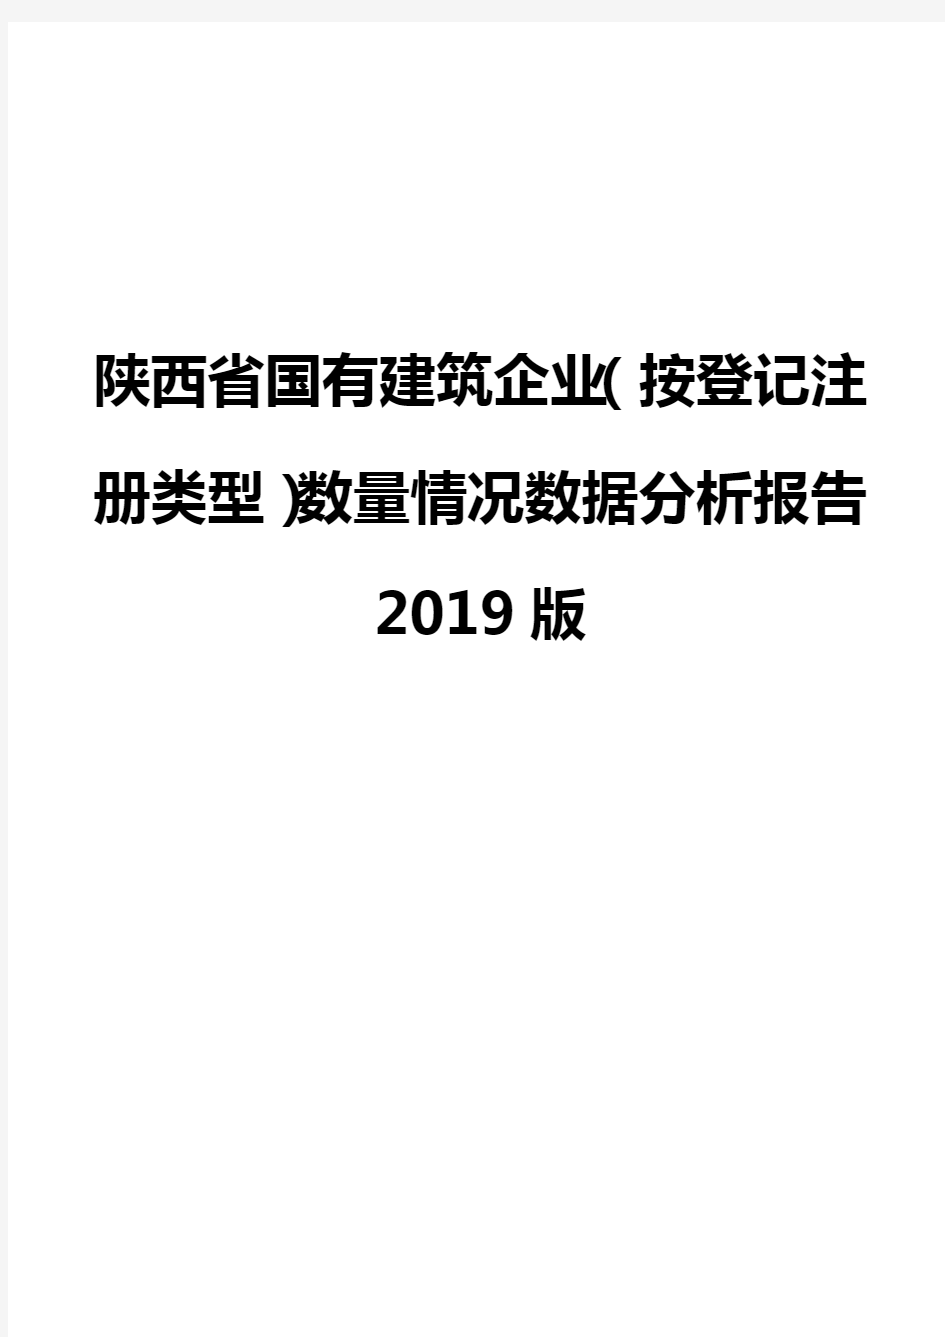 陕西省国有建筑企业(按登记注册类型)数量情况数据分析报告2019版